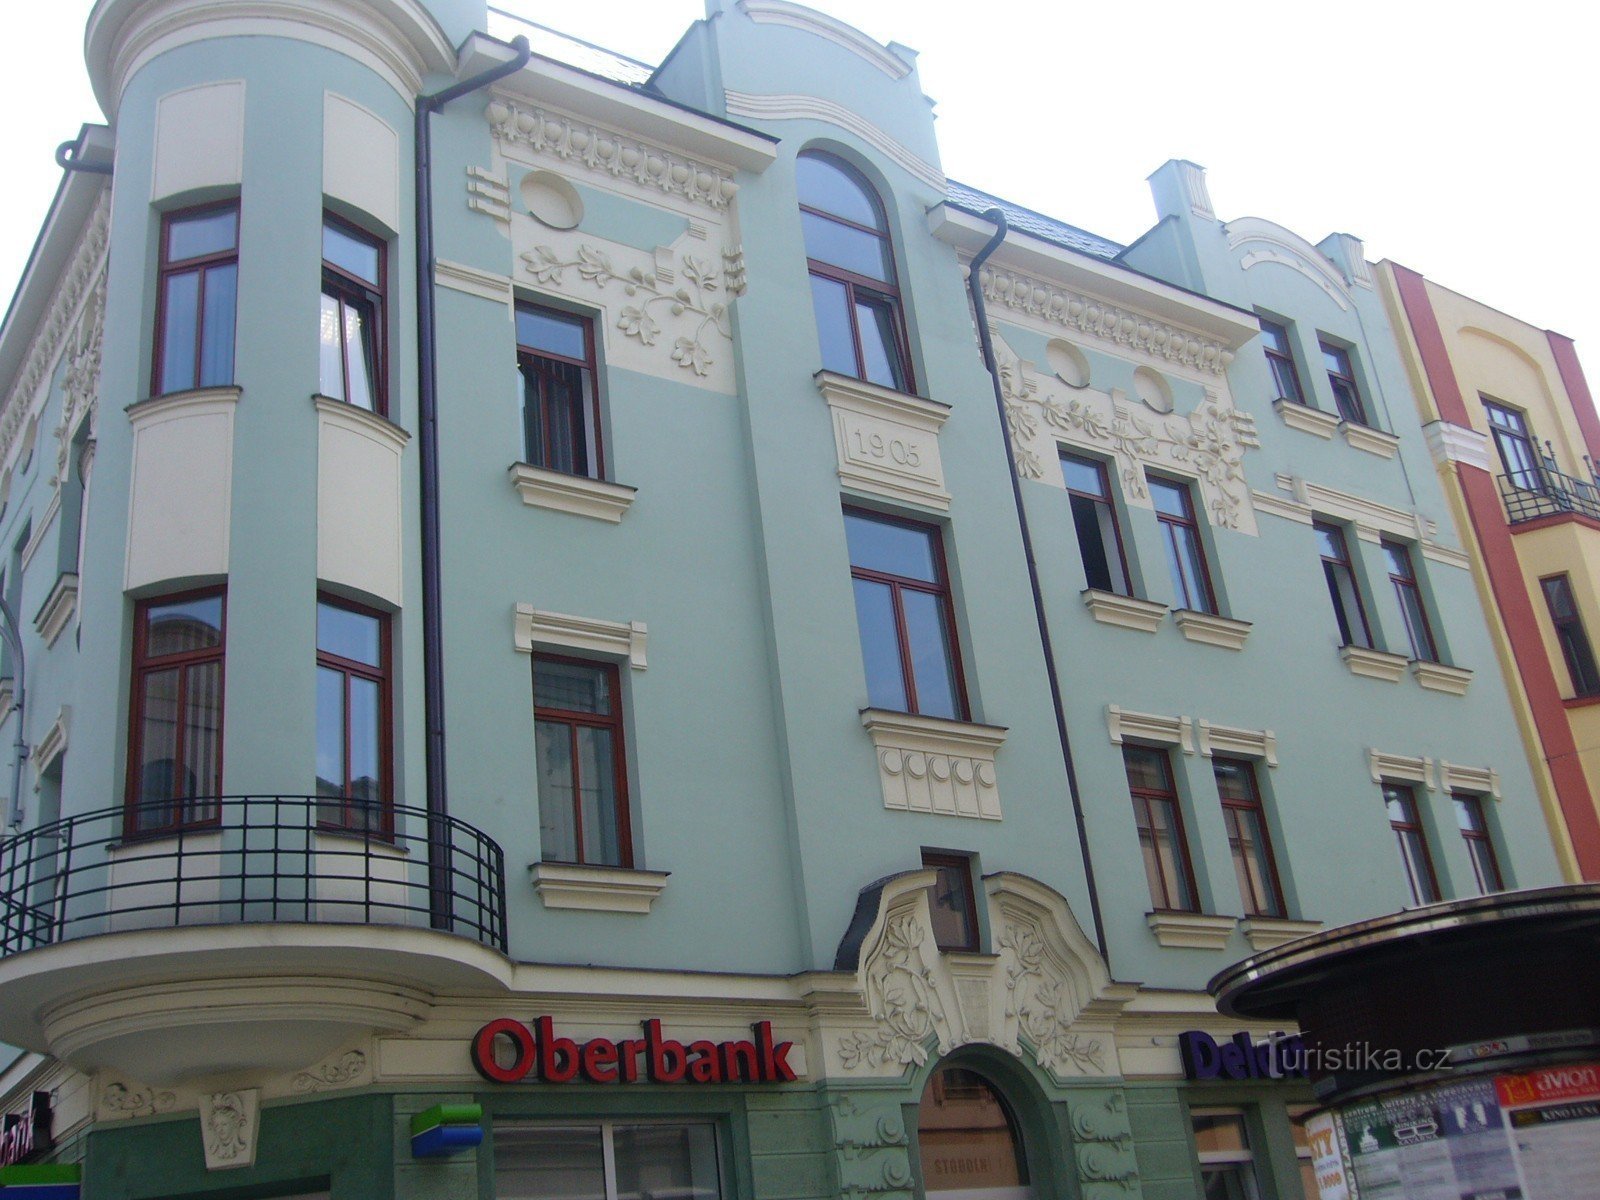 Art Nouveau house on the corner of Nádražní and Stodolní streets